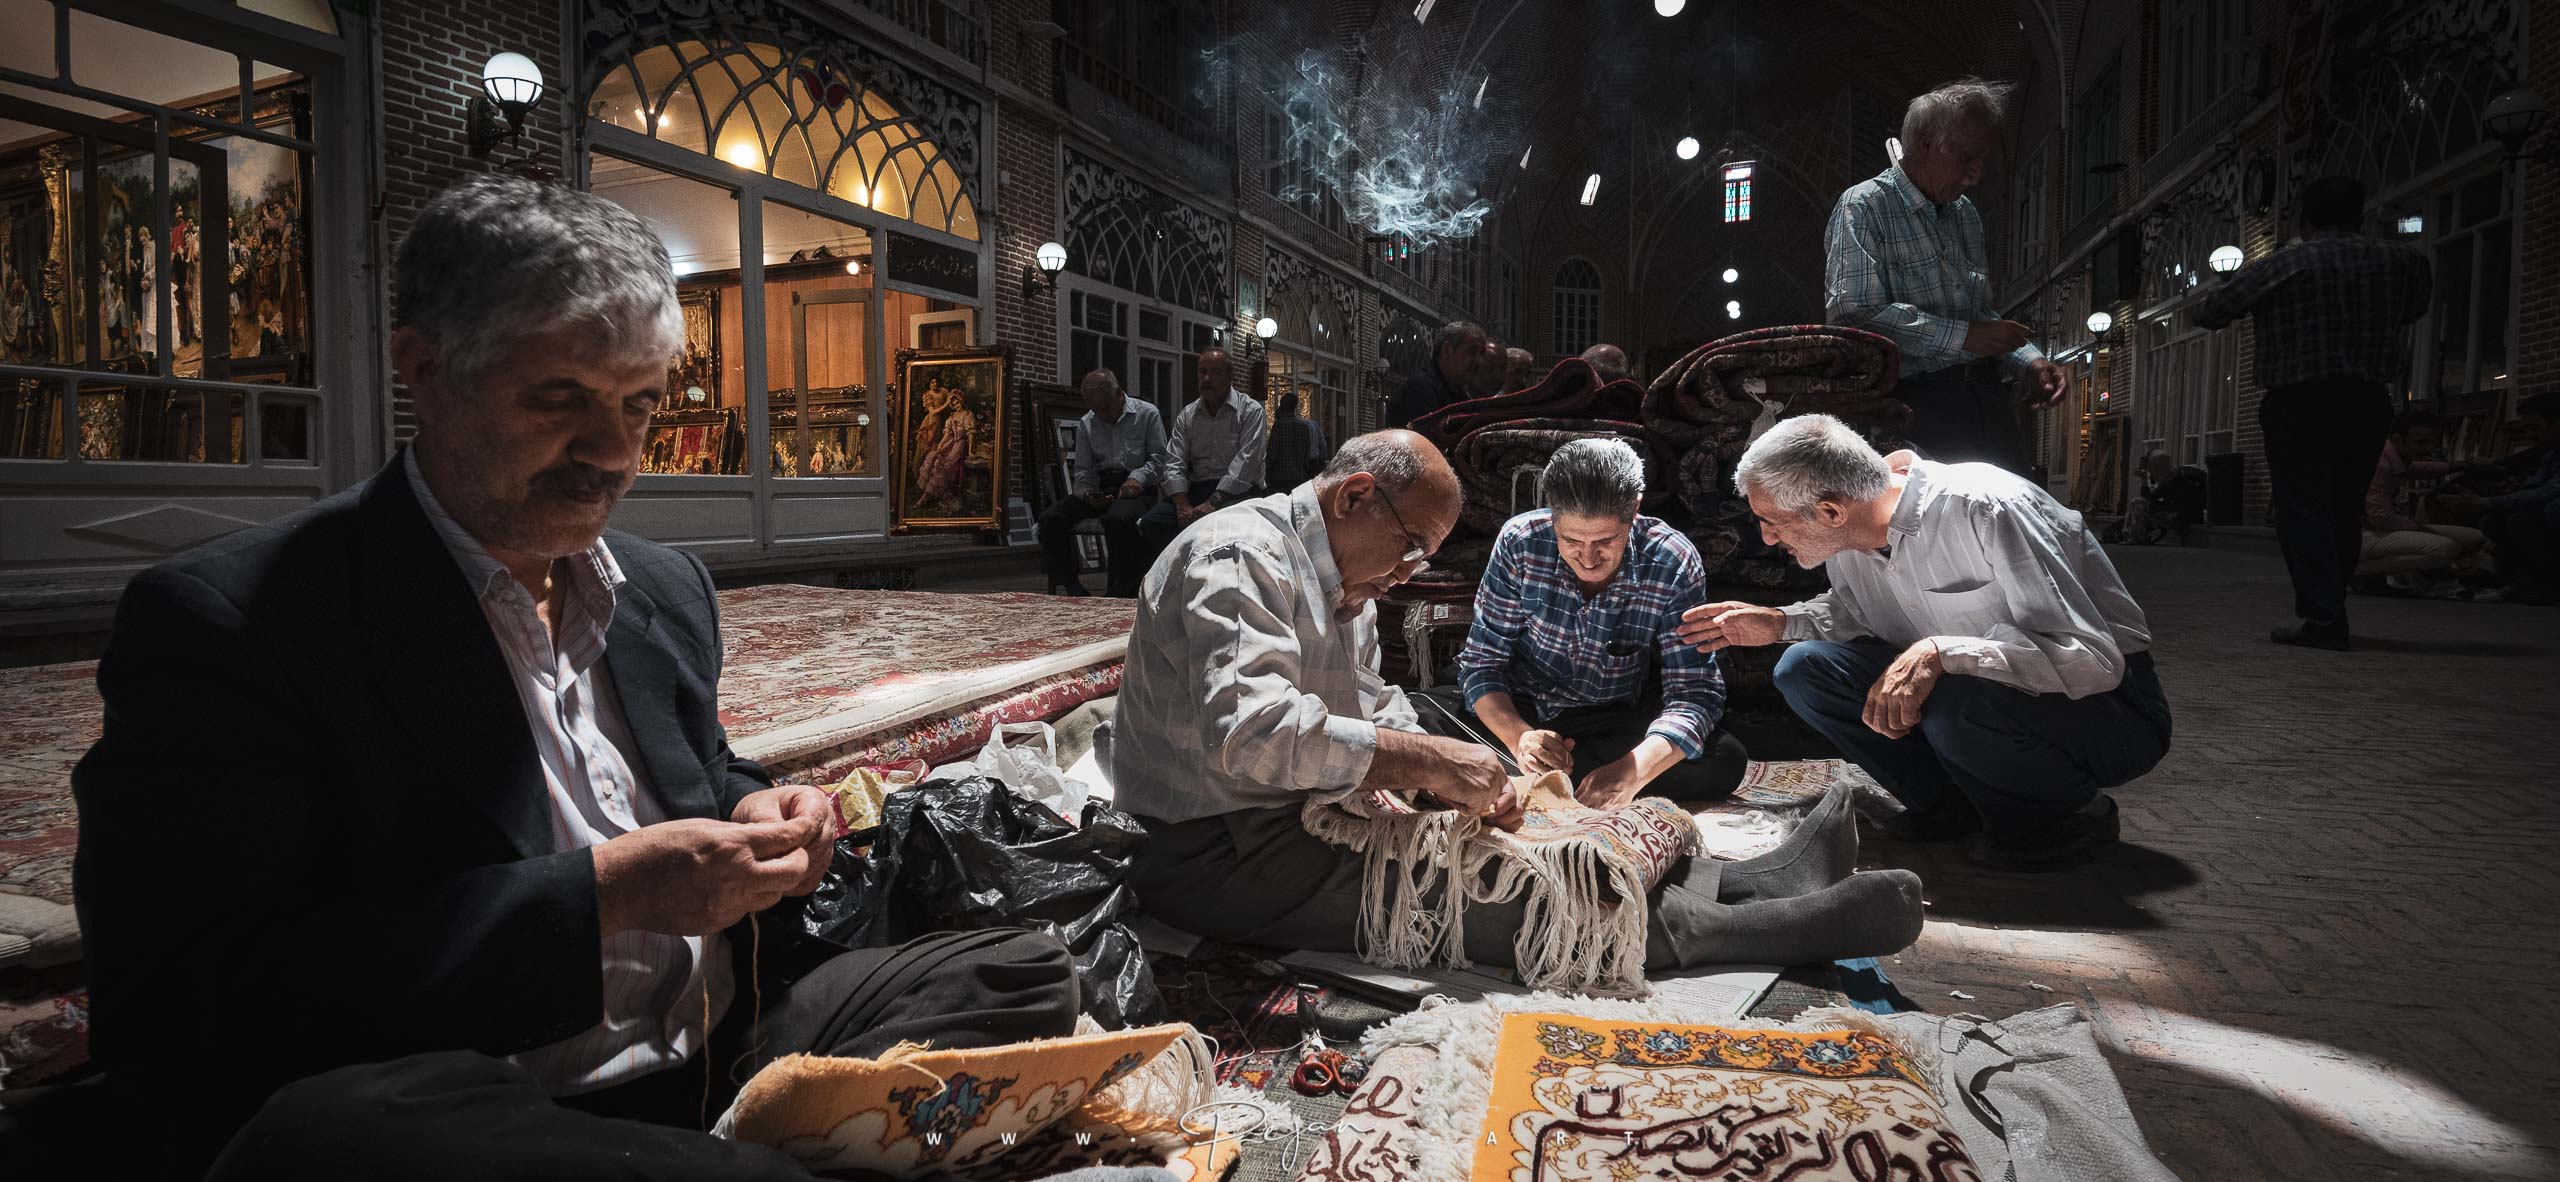 Grand bazar de Tabriz, des artisans réparent des tapis traditionnels, Azerbaïdjan Occidental, Iran